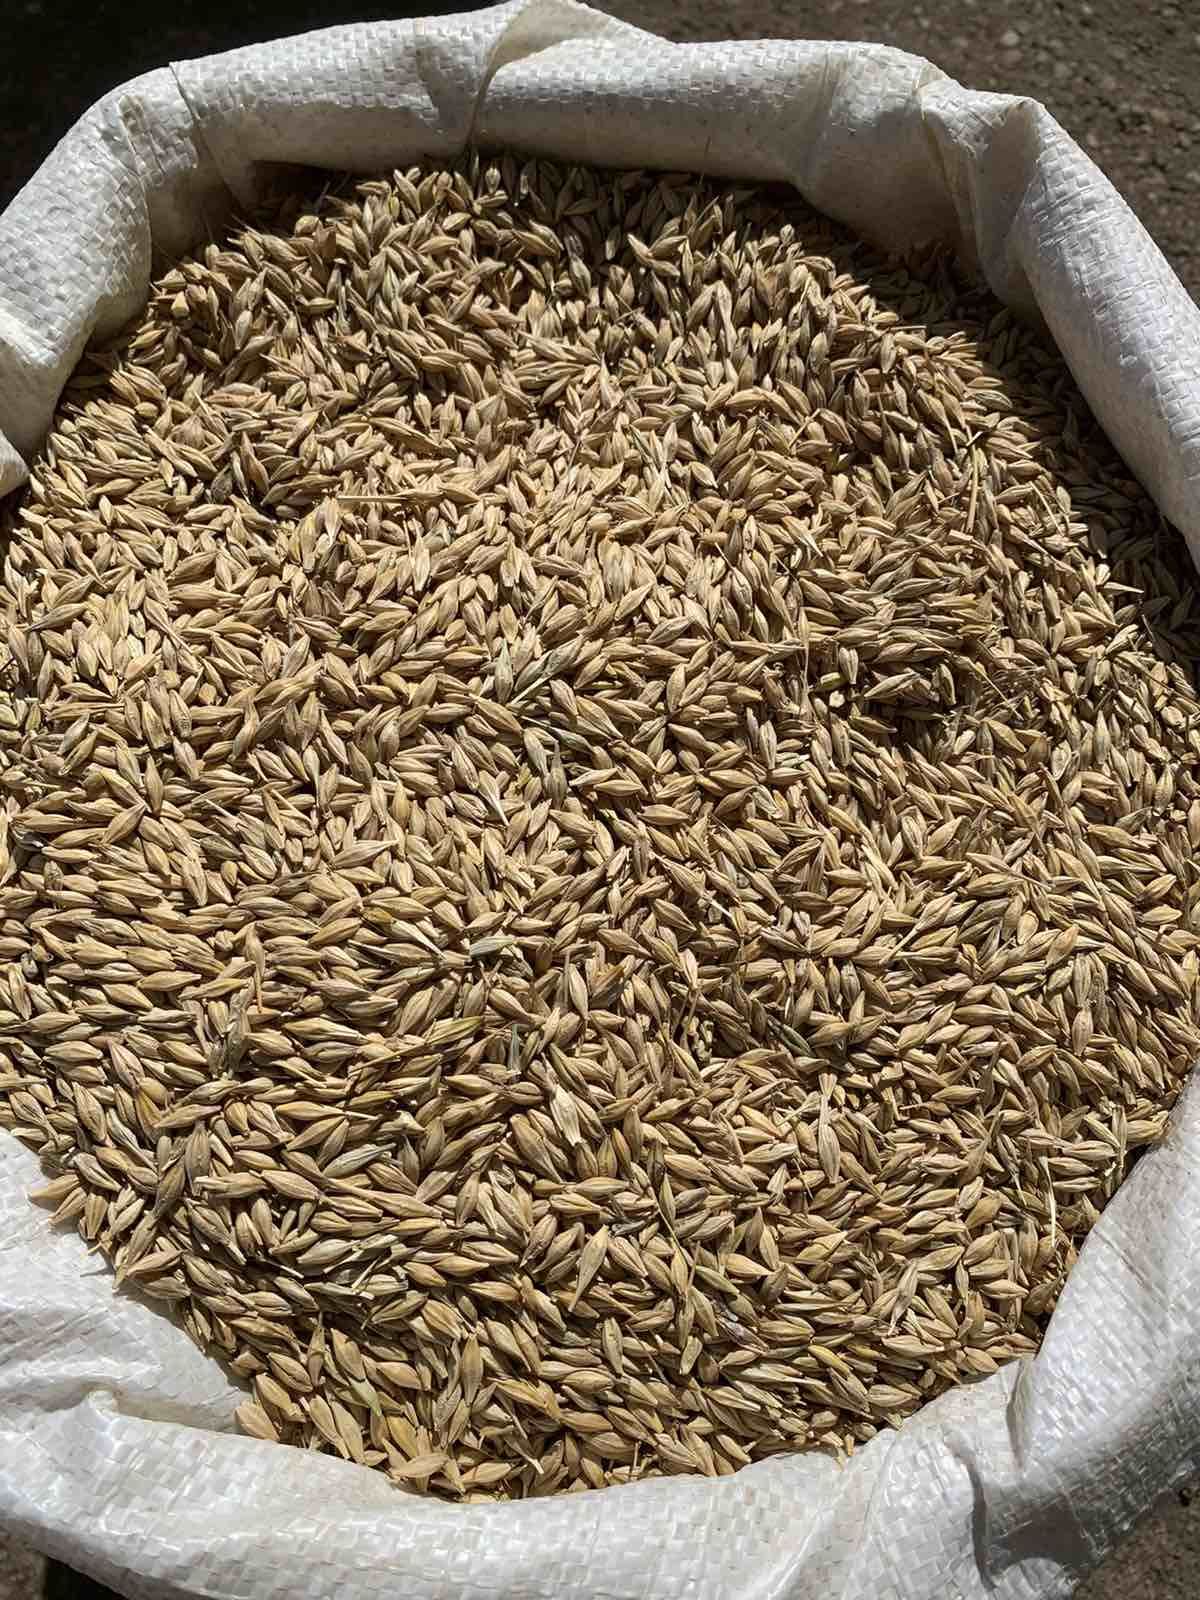 Купить фуражное зерно ячменя в мешках в Минске по выгодной цене